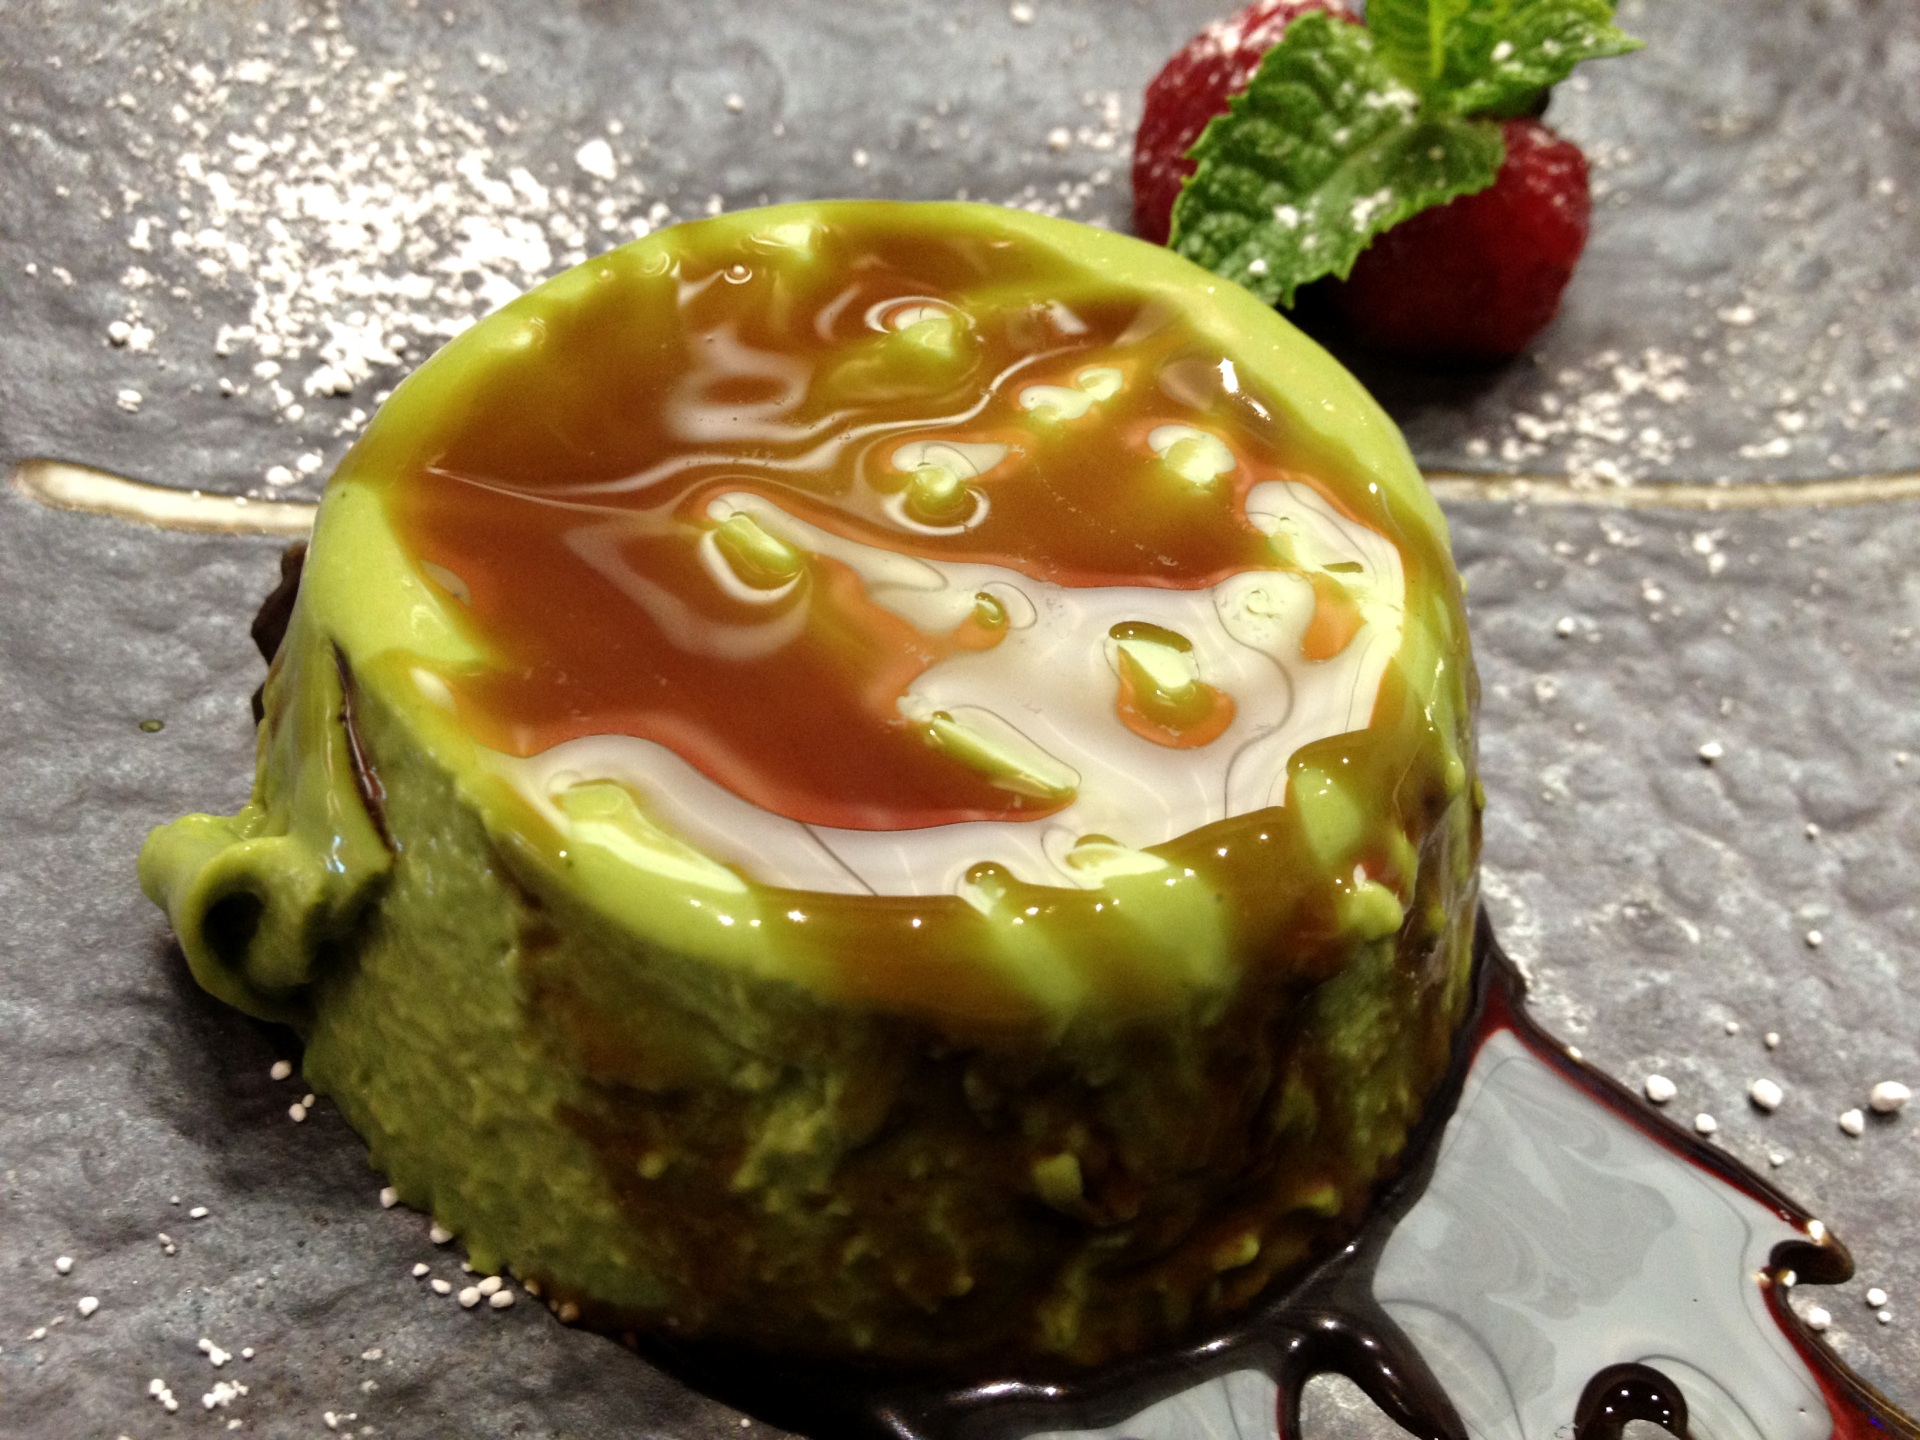 Homemade Green Tea Pudding at Yojisan (© 2012 The Offalo)